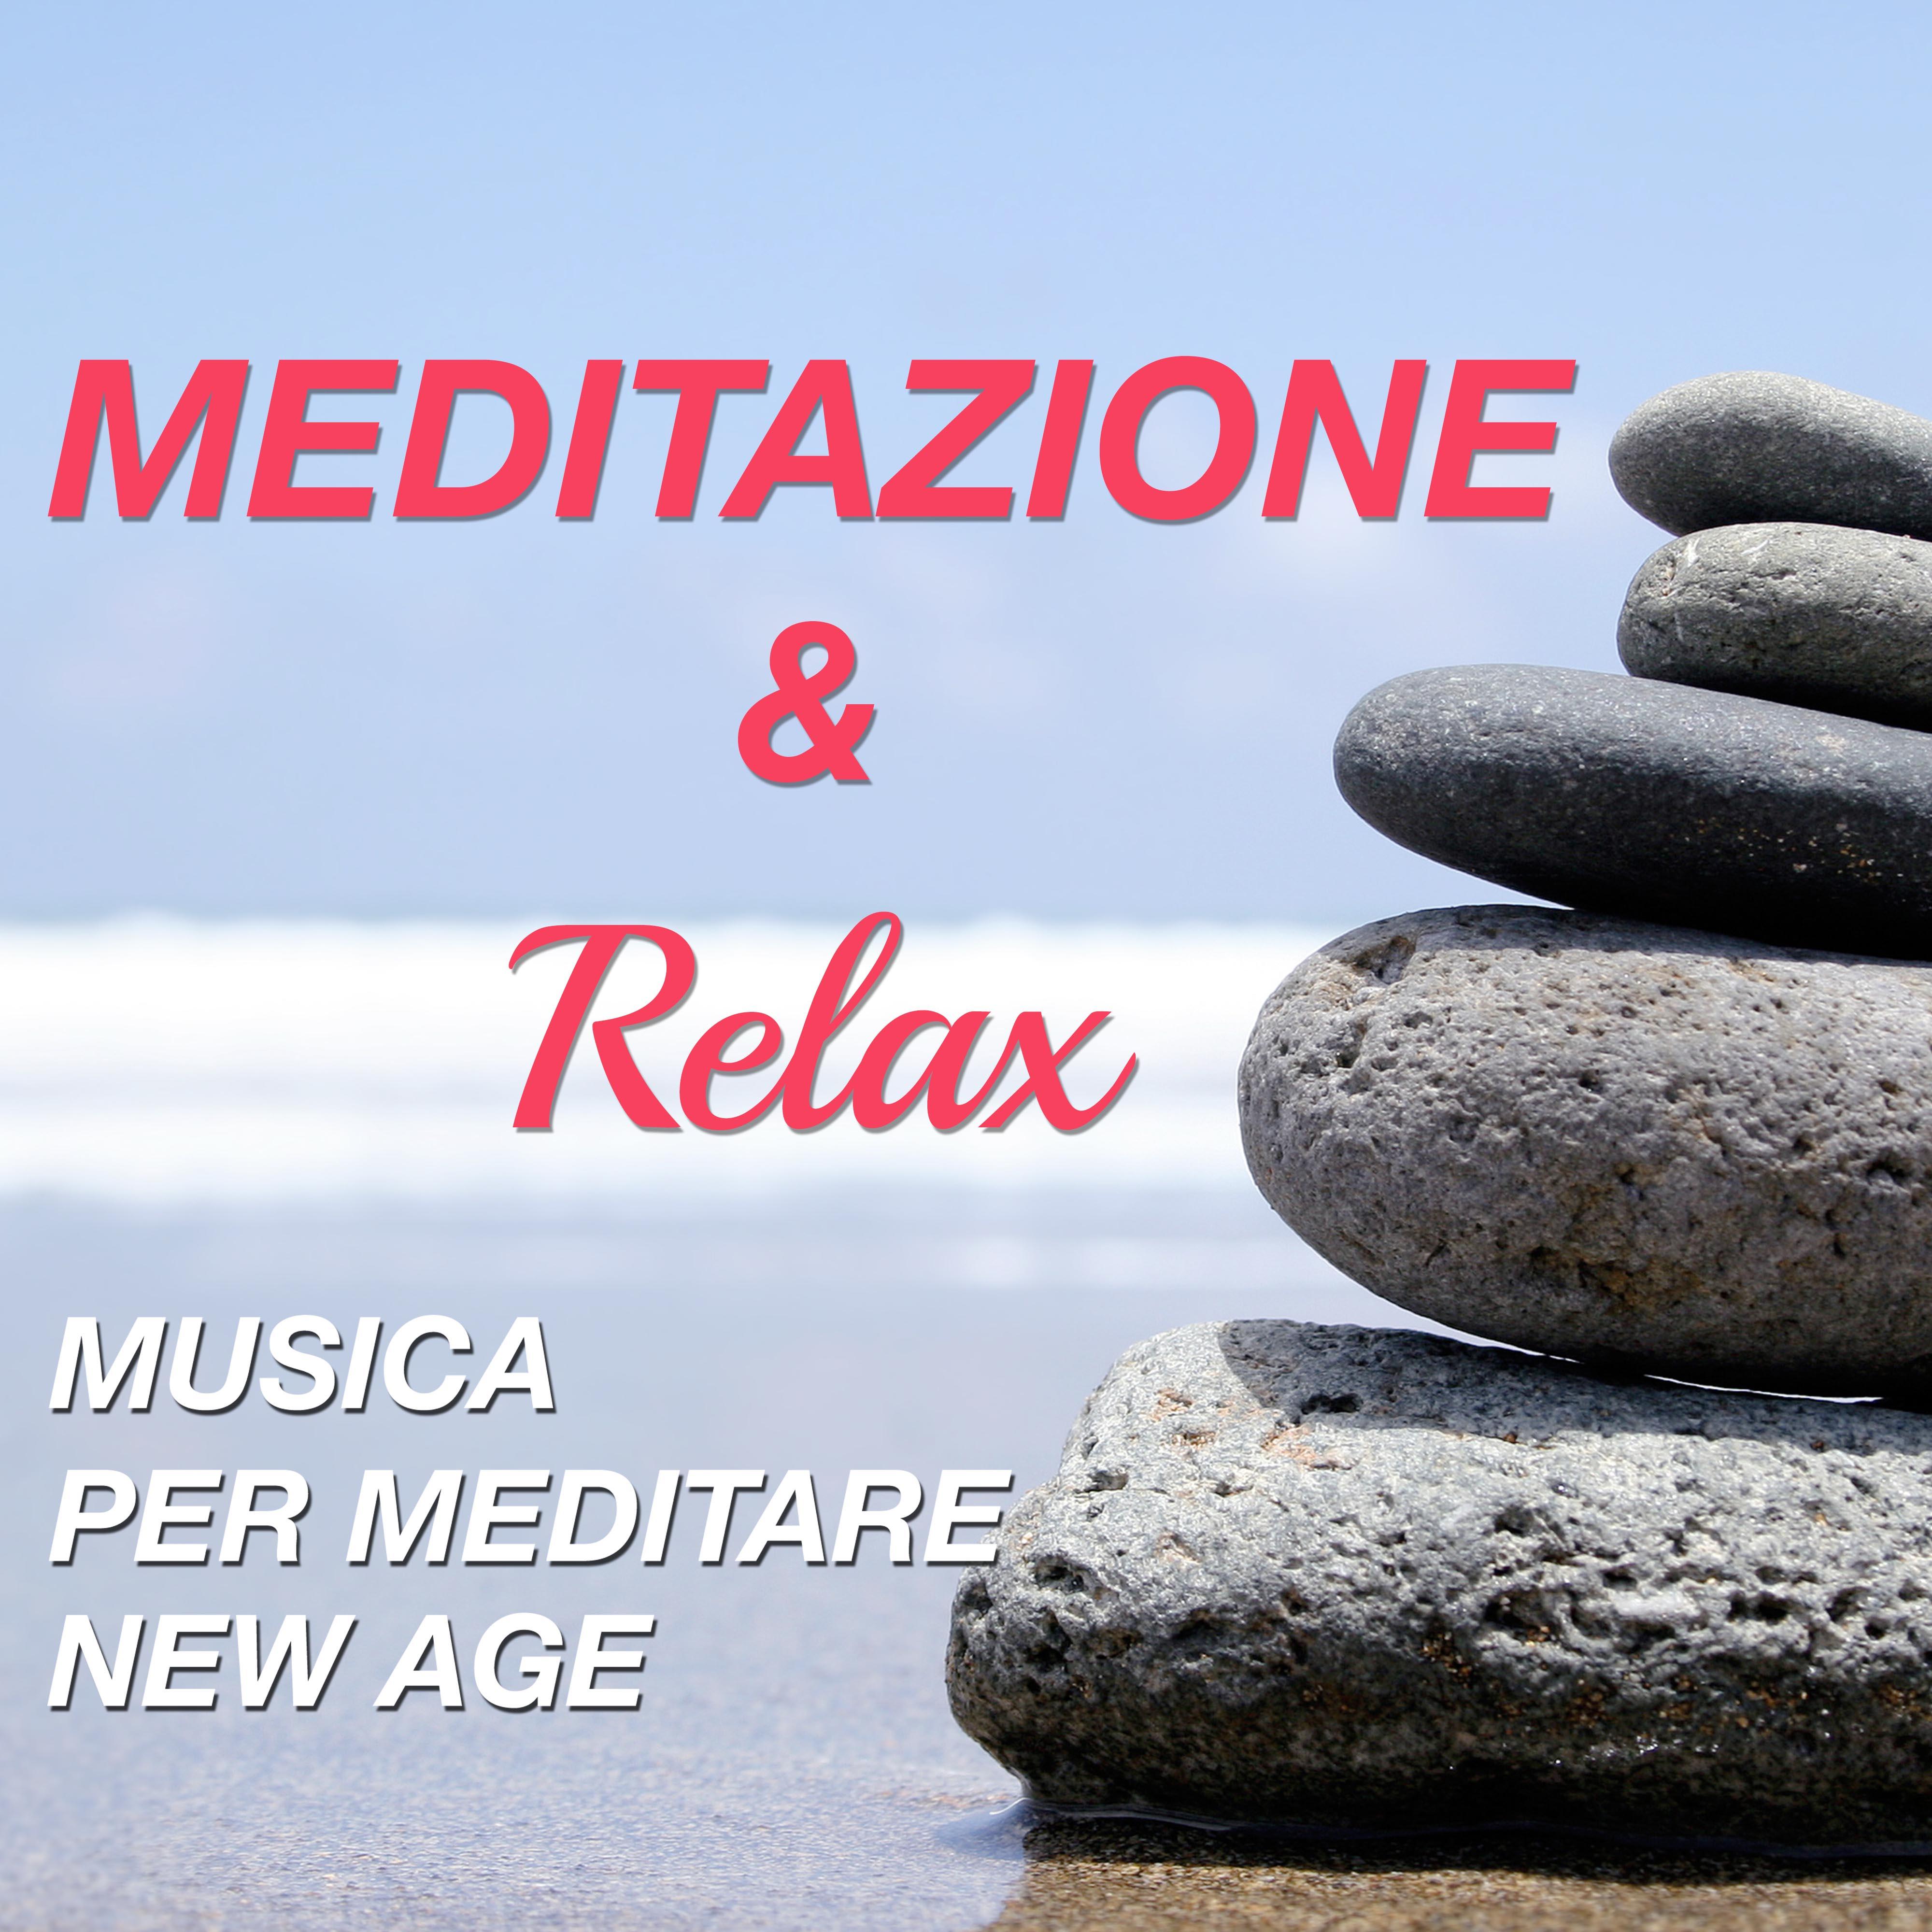 Meditazione  Relax  Musica per Meditare New Age per la Pace Interiore, la Serenita e la Tranquillita